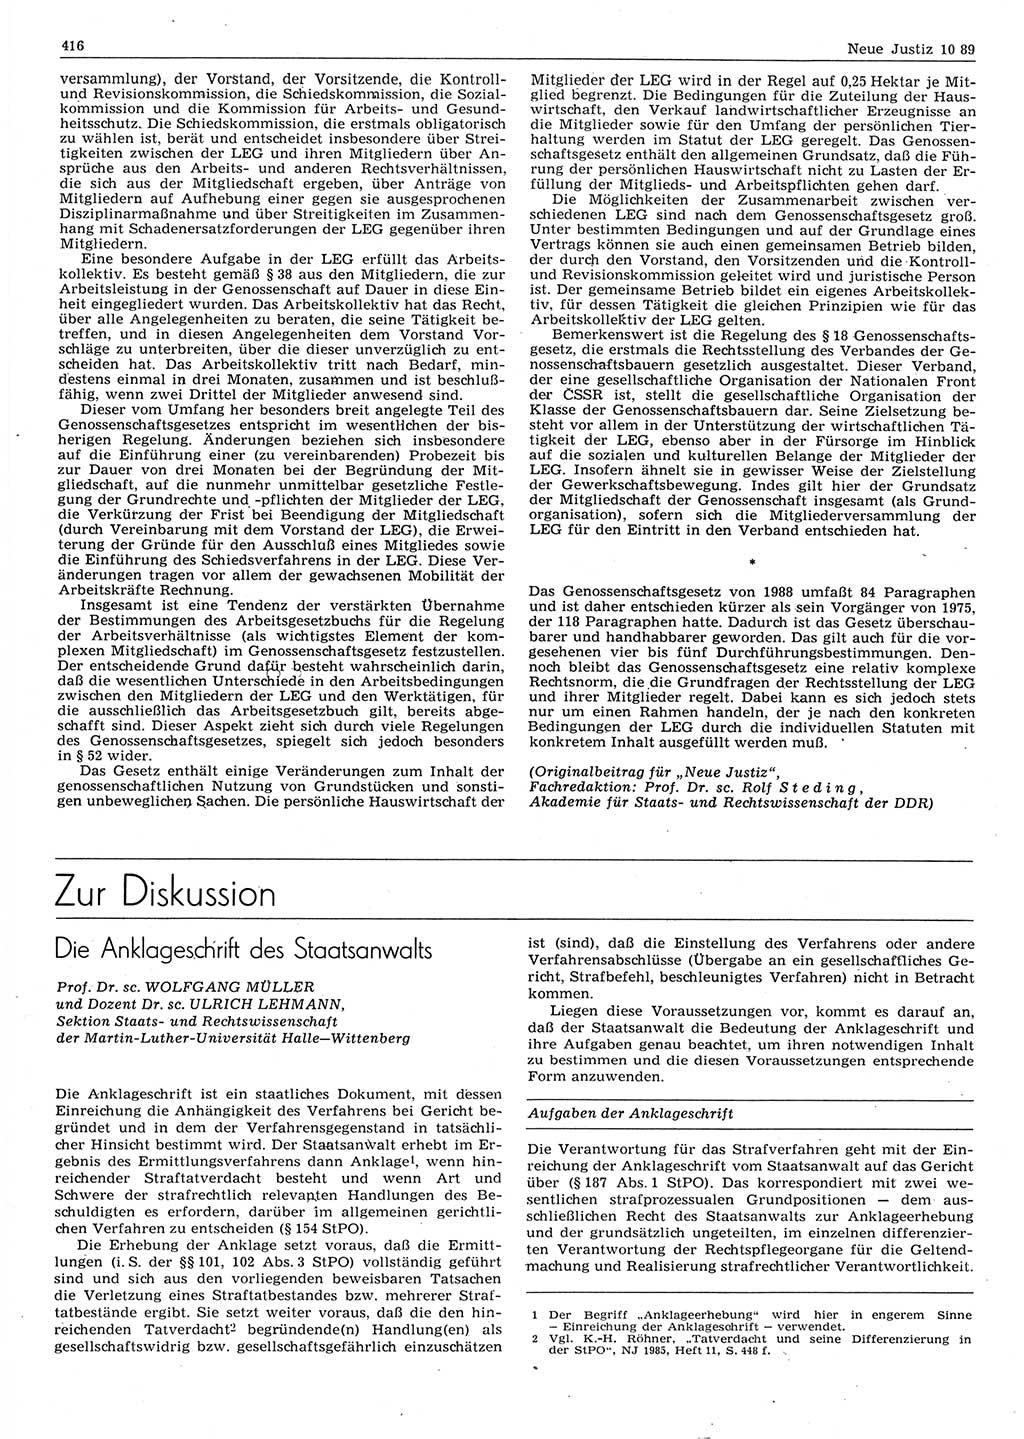 Neue Justiz (NJ), Zeitschrift für sozialistisches Recht und Gesetzlichkeit [Deutsche Demokratische Republik (DDR)], 43. Jahrgang 1989, Seite 416 (NJ DDR 1989, S. 416)